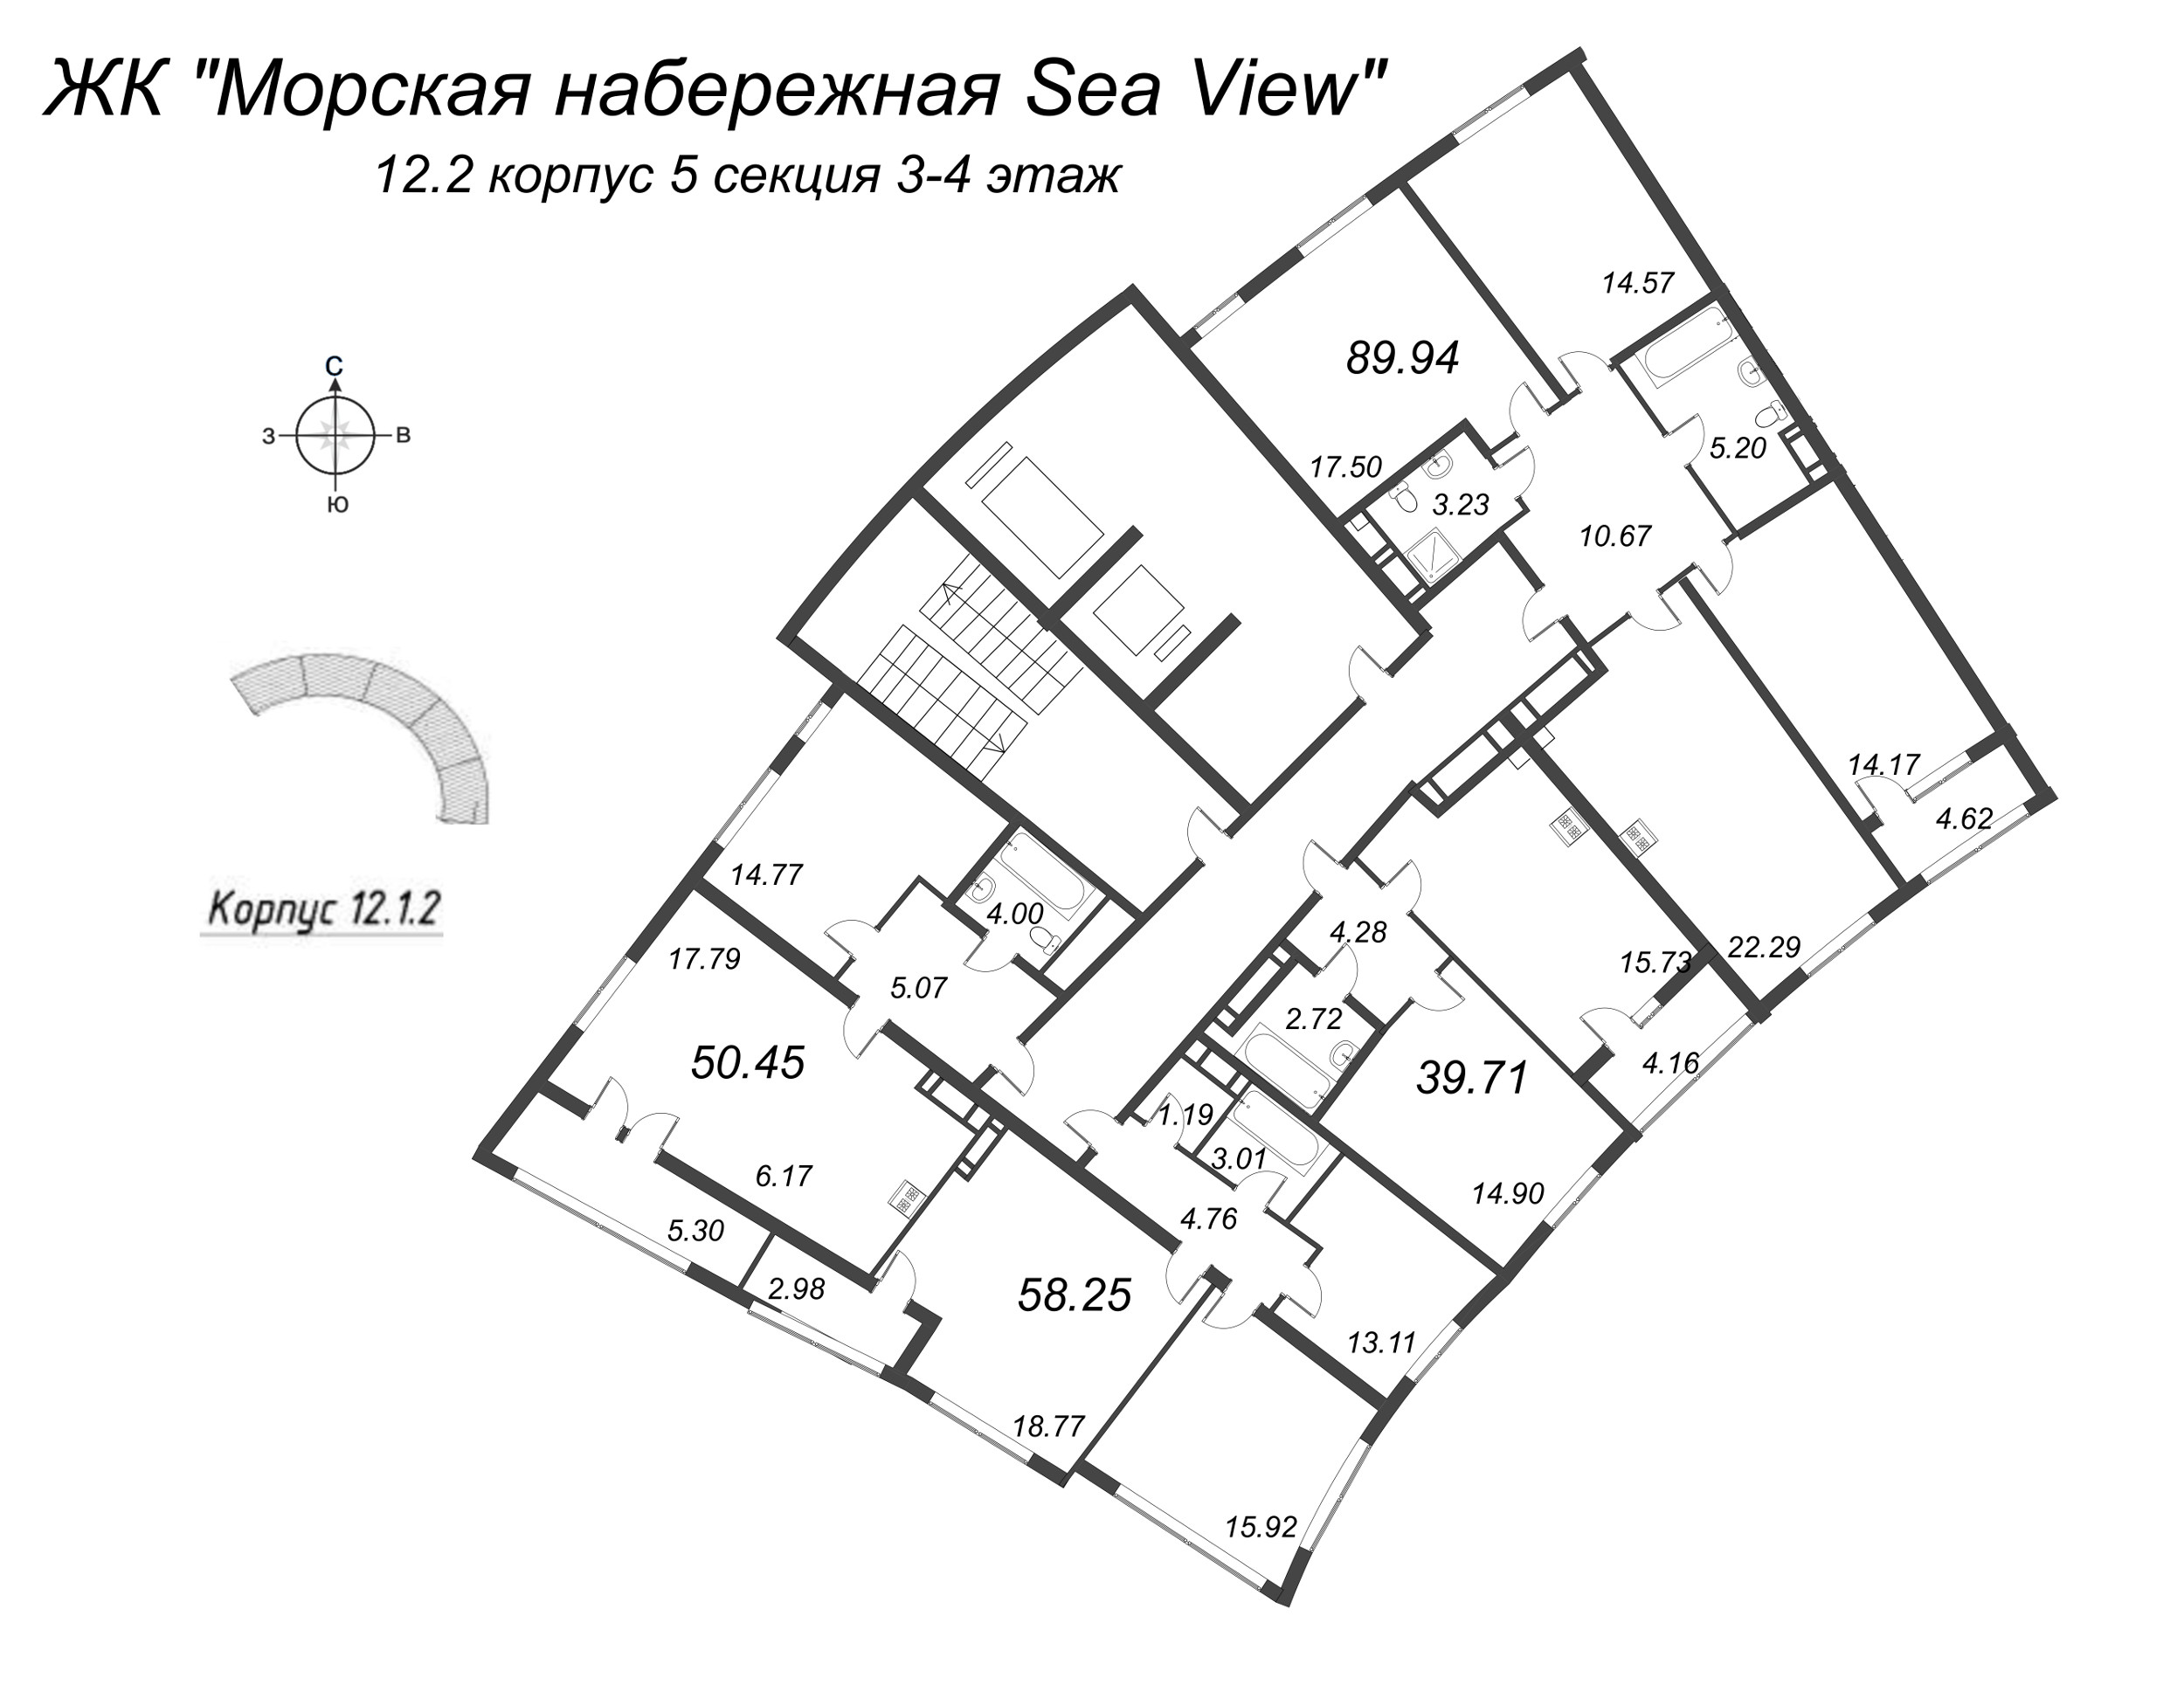 4-комнатная (Евро) квартира, 89.94 м² в ЖК "Морская набережная. SeaView" - планировка этажа